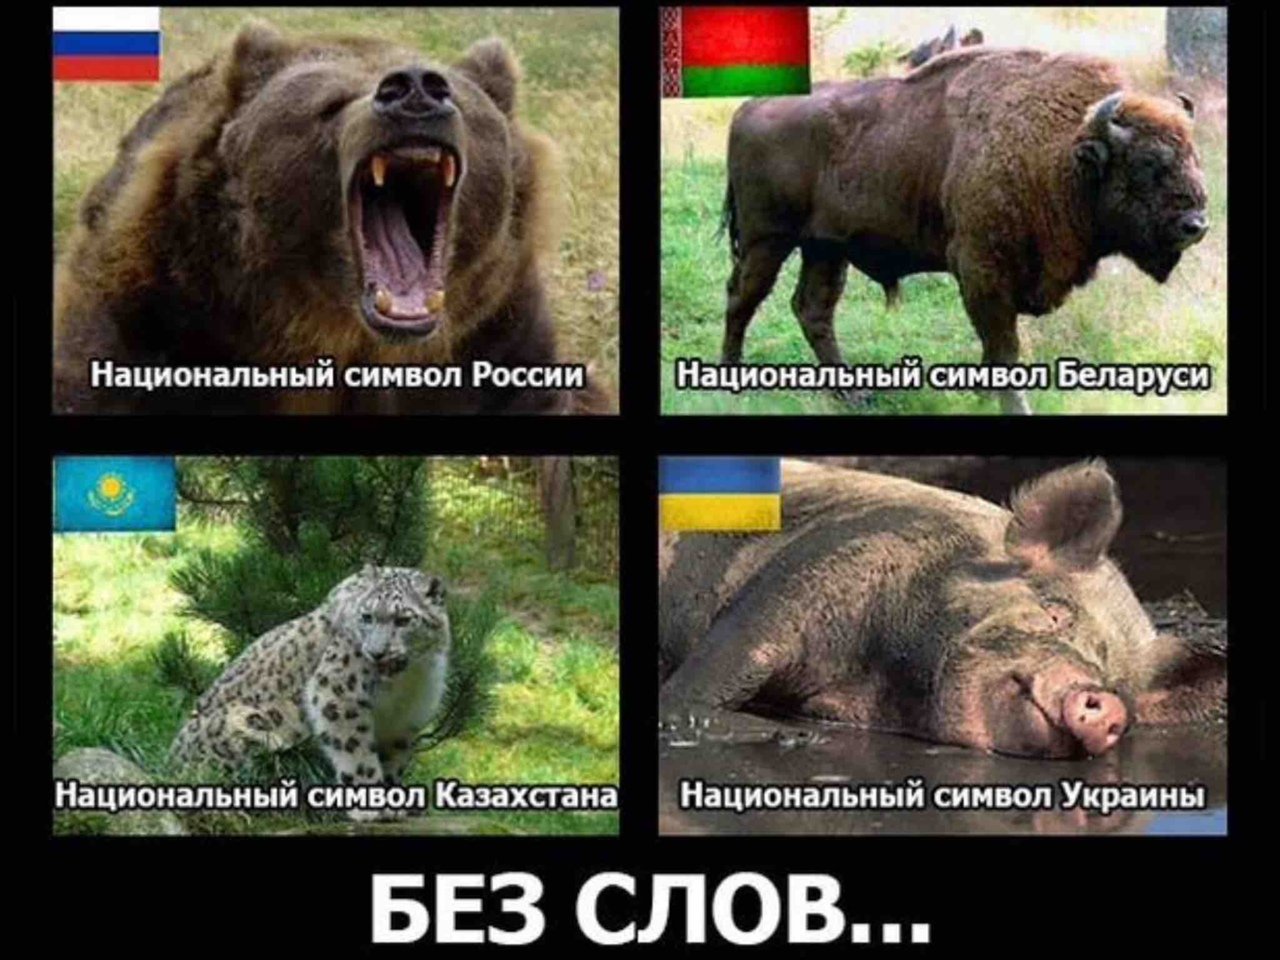 Прозвища зверей в народных. Символ Украины животного. Свинья это национальный символ Украины. Национальное животное УК. Симфол украинс животное.